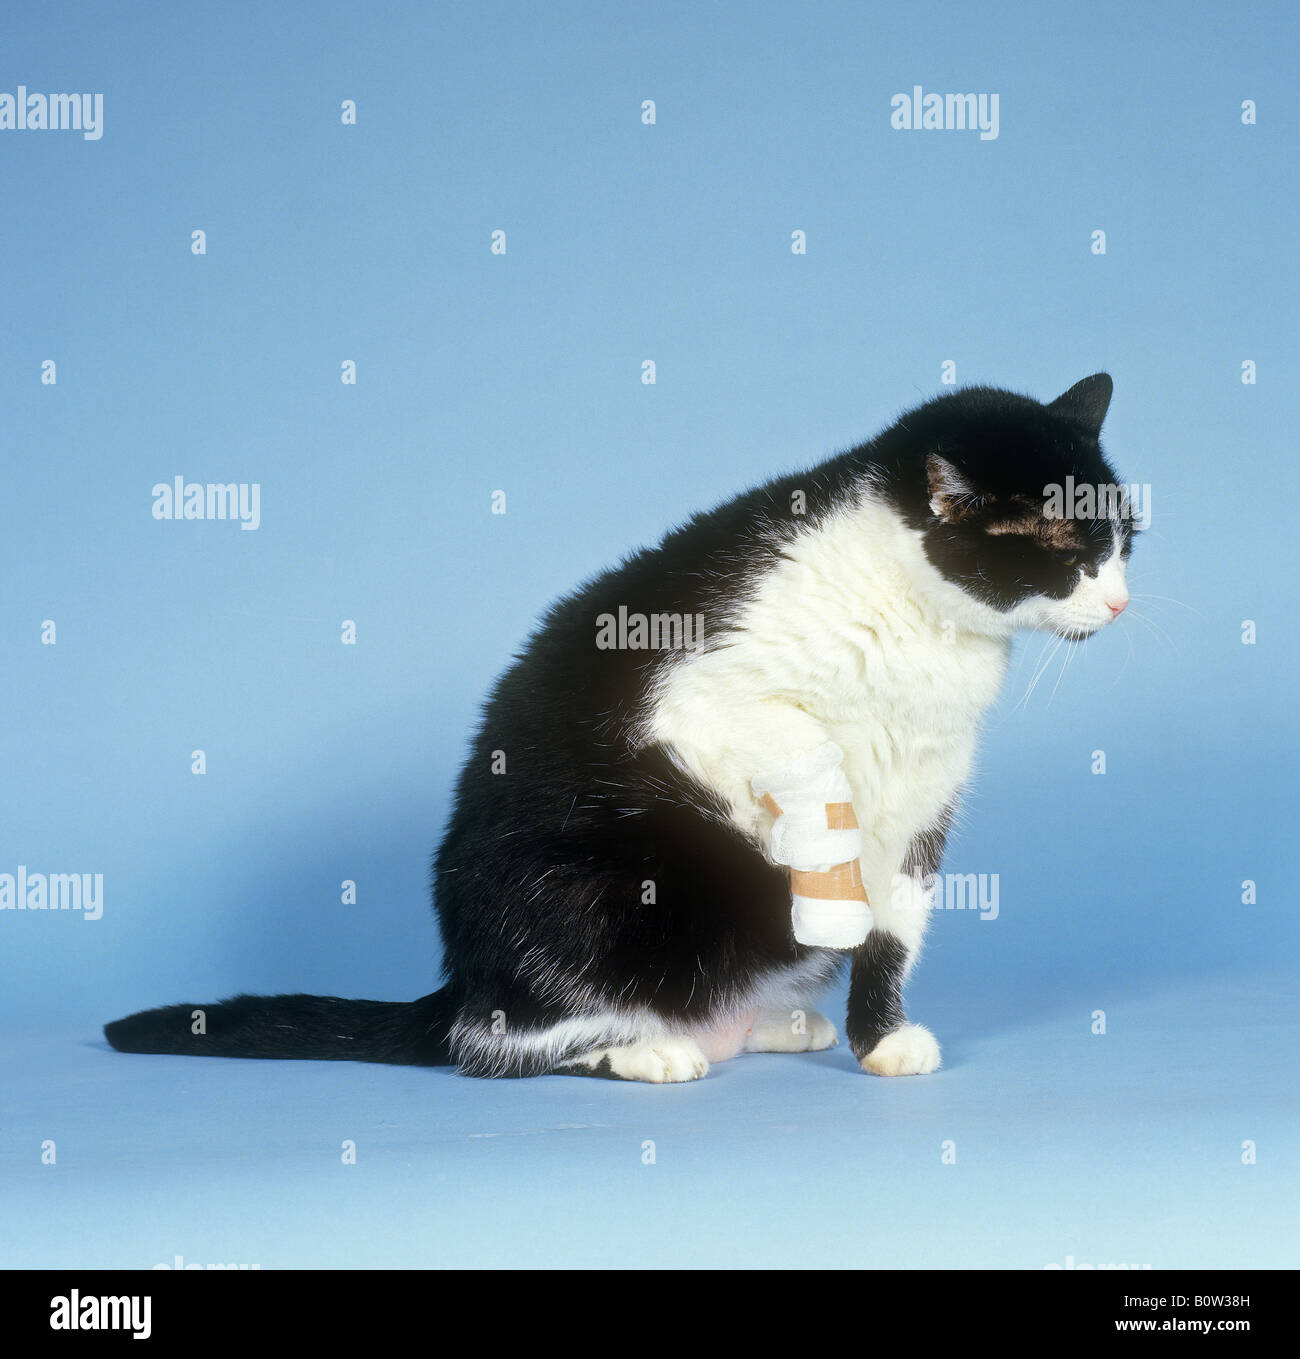 Chat domestique, adulte noir et blanc avec patte de bandage. Image de studio sur fond bleu. Allemagne Banque D'Images